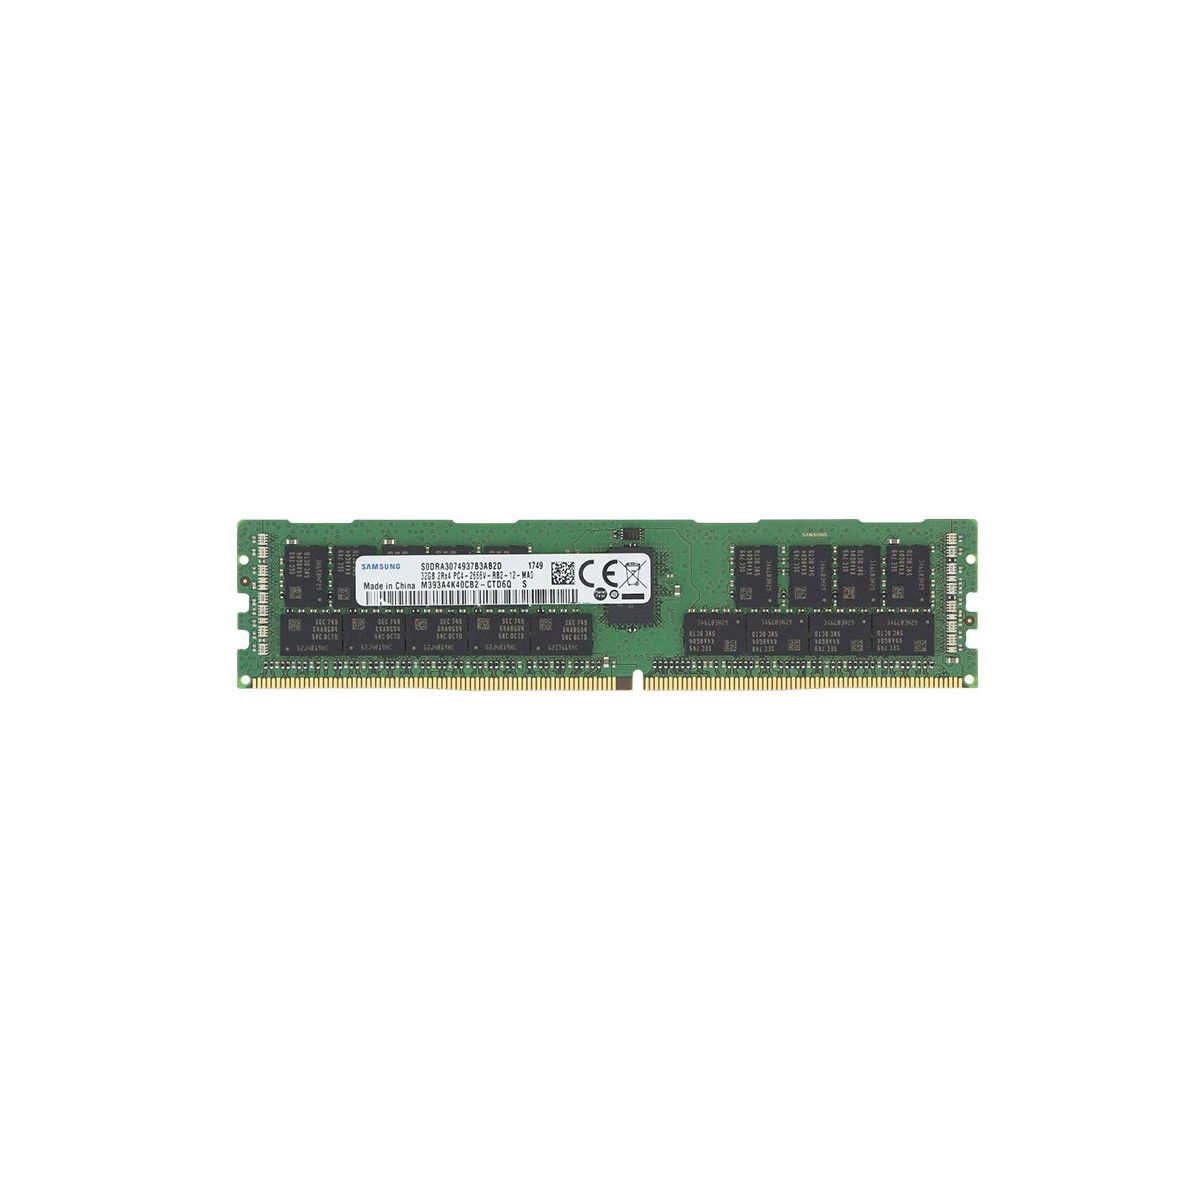 MEM-DR432L-SL02-ER26-MS - Memstar 1x 32GB DDR4-2666 RDIMM PC4-21300V-R